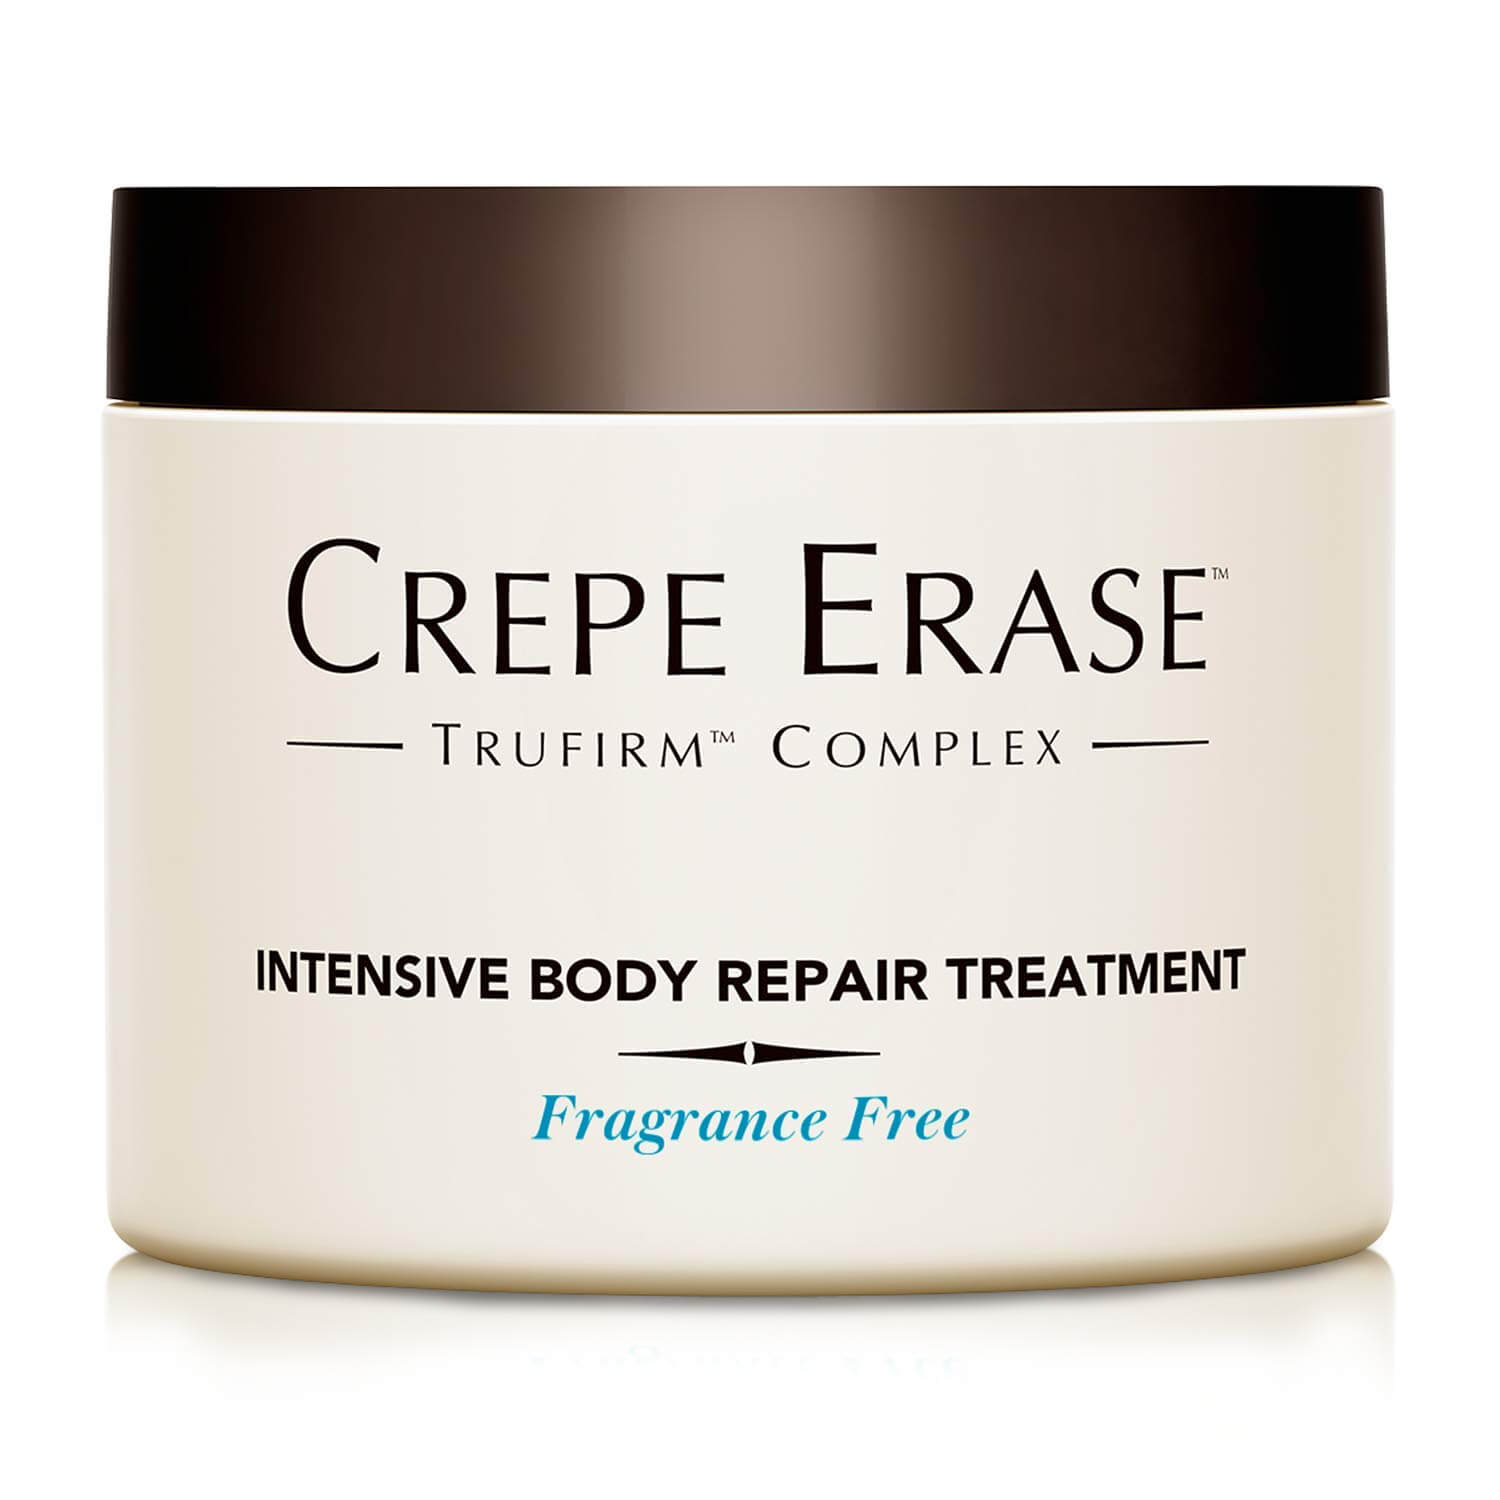 Crepe Erase – Intensive Body Repair Treatment